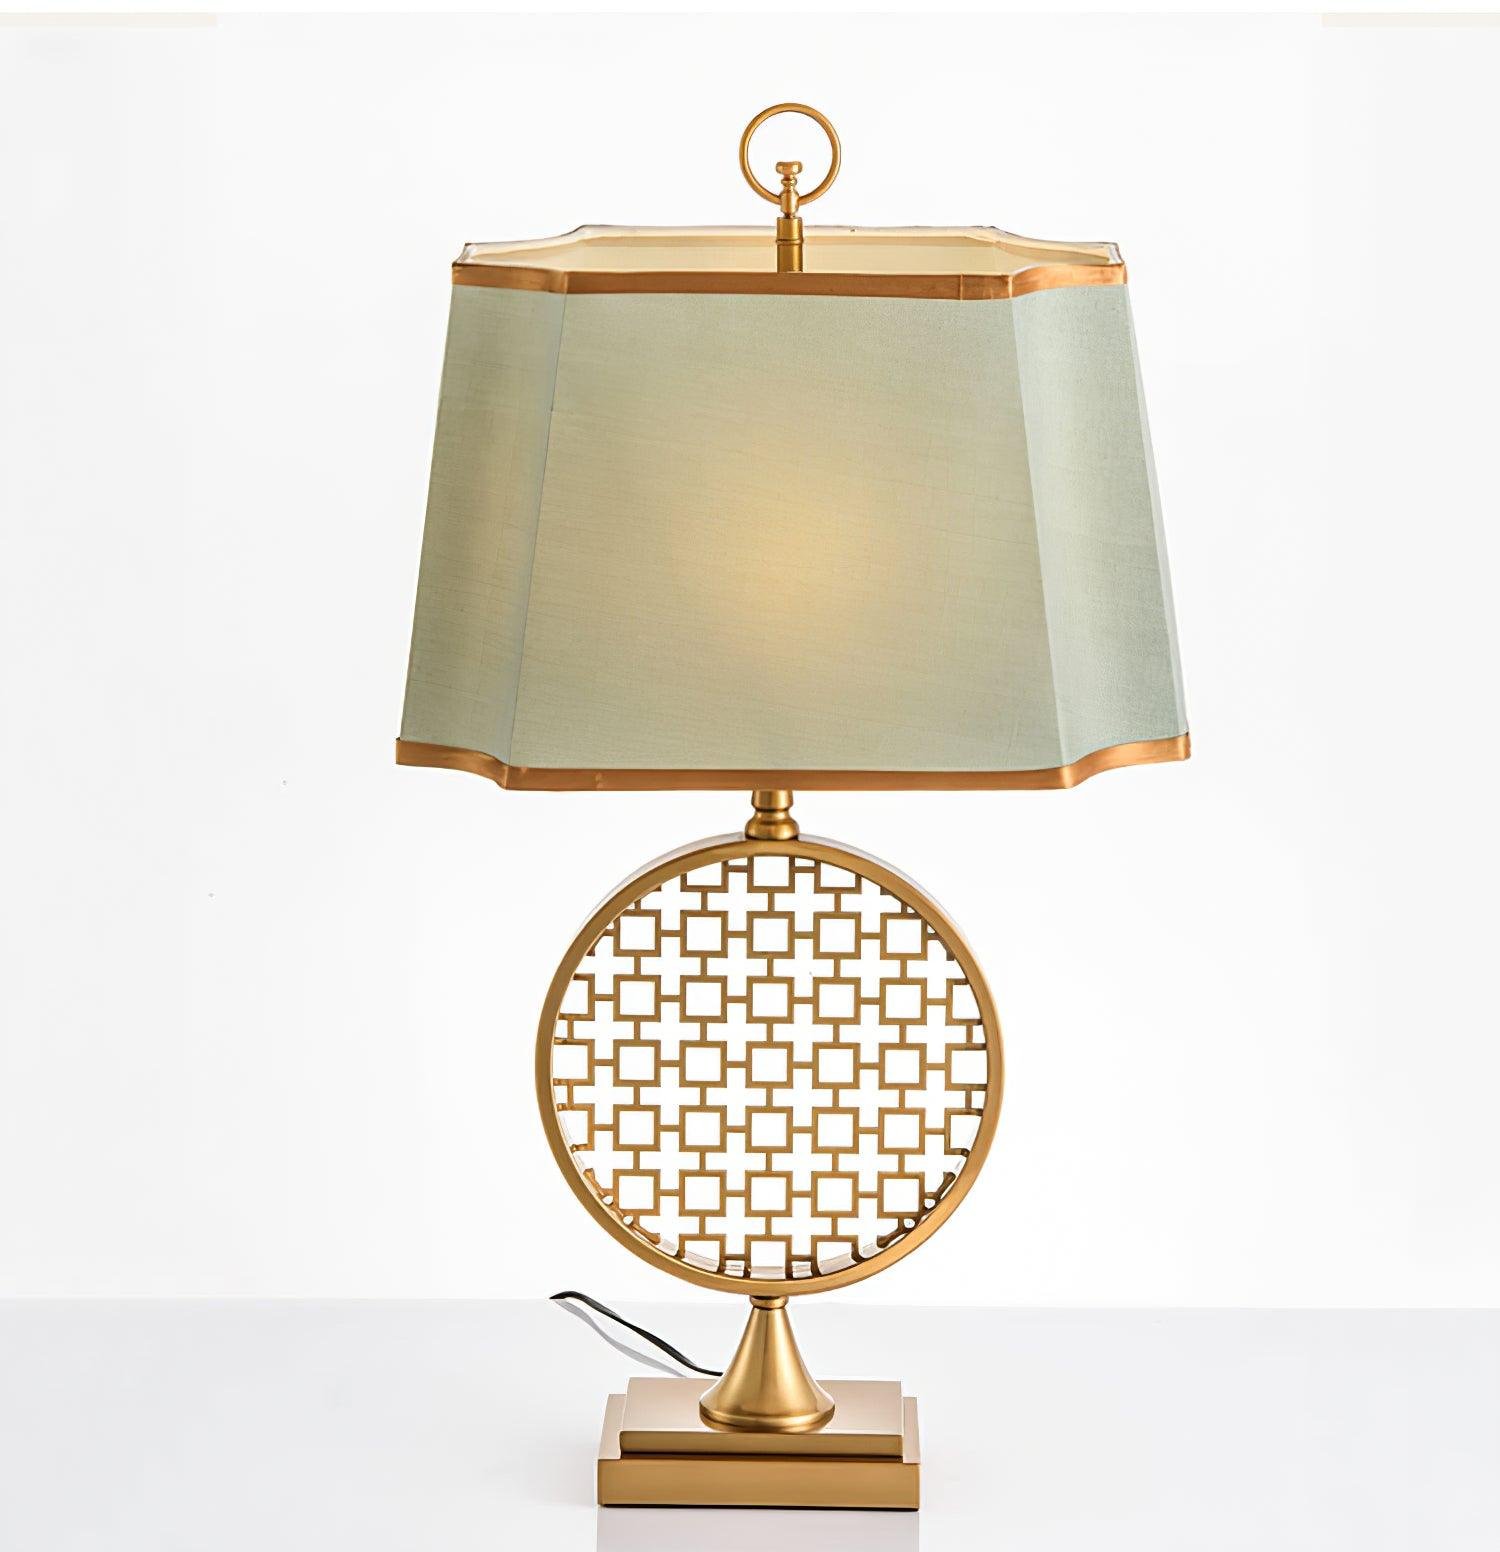 Soho Table Lamp ∅ 15.7″ x H 28.3″ , Dia 40cm x H 72cm , Gold , EU plug